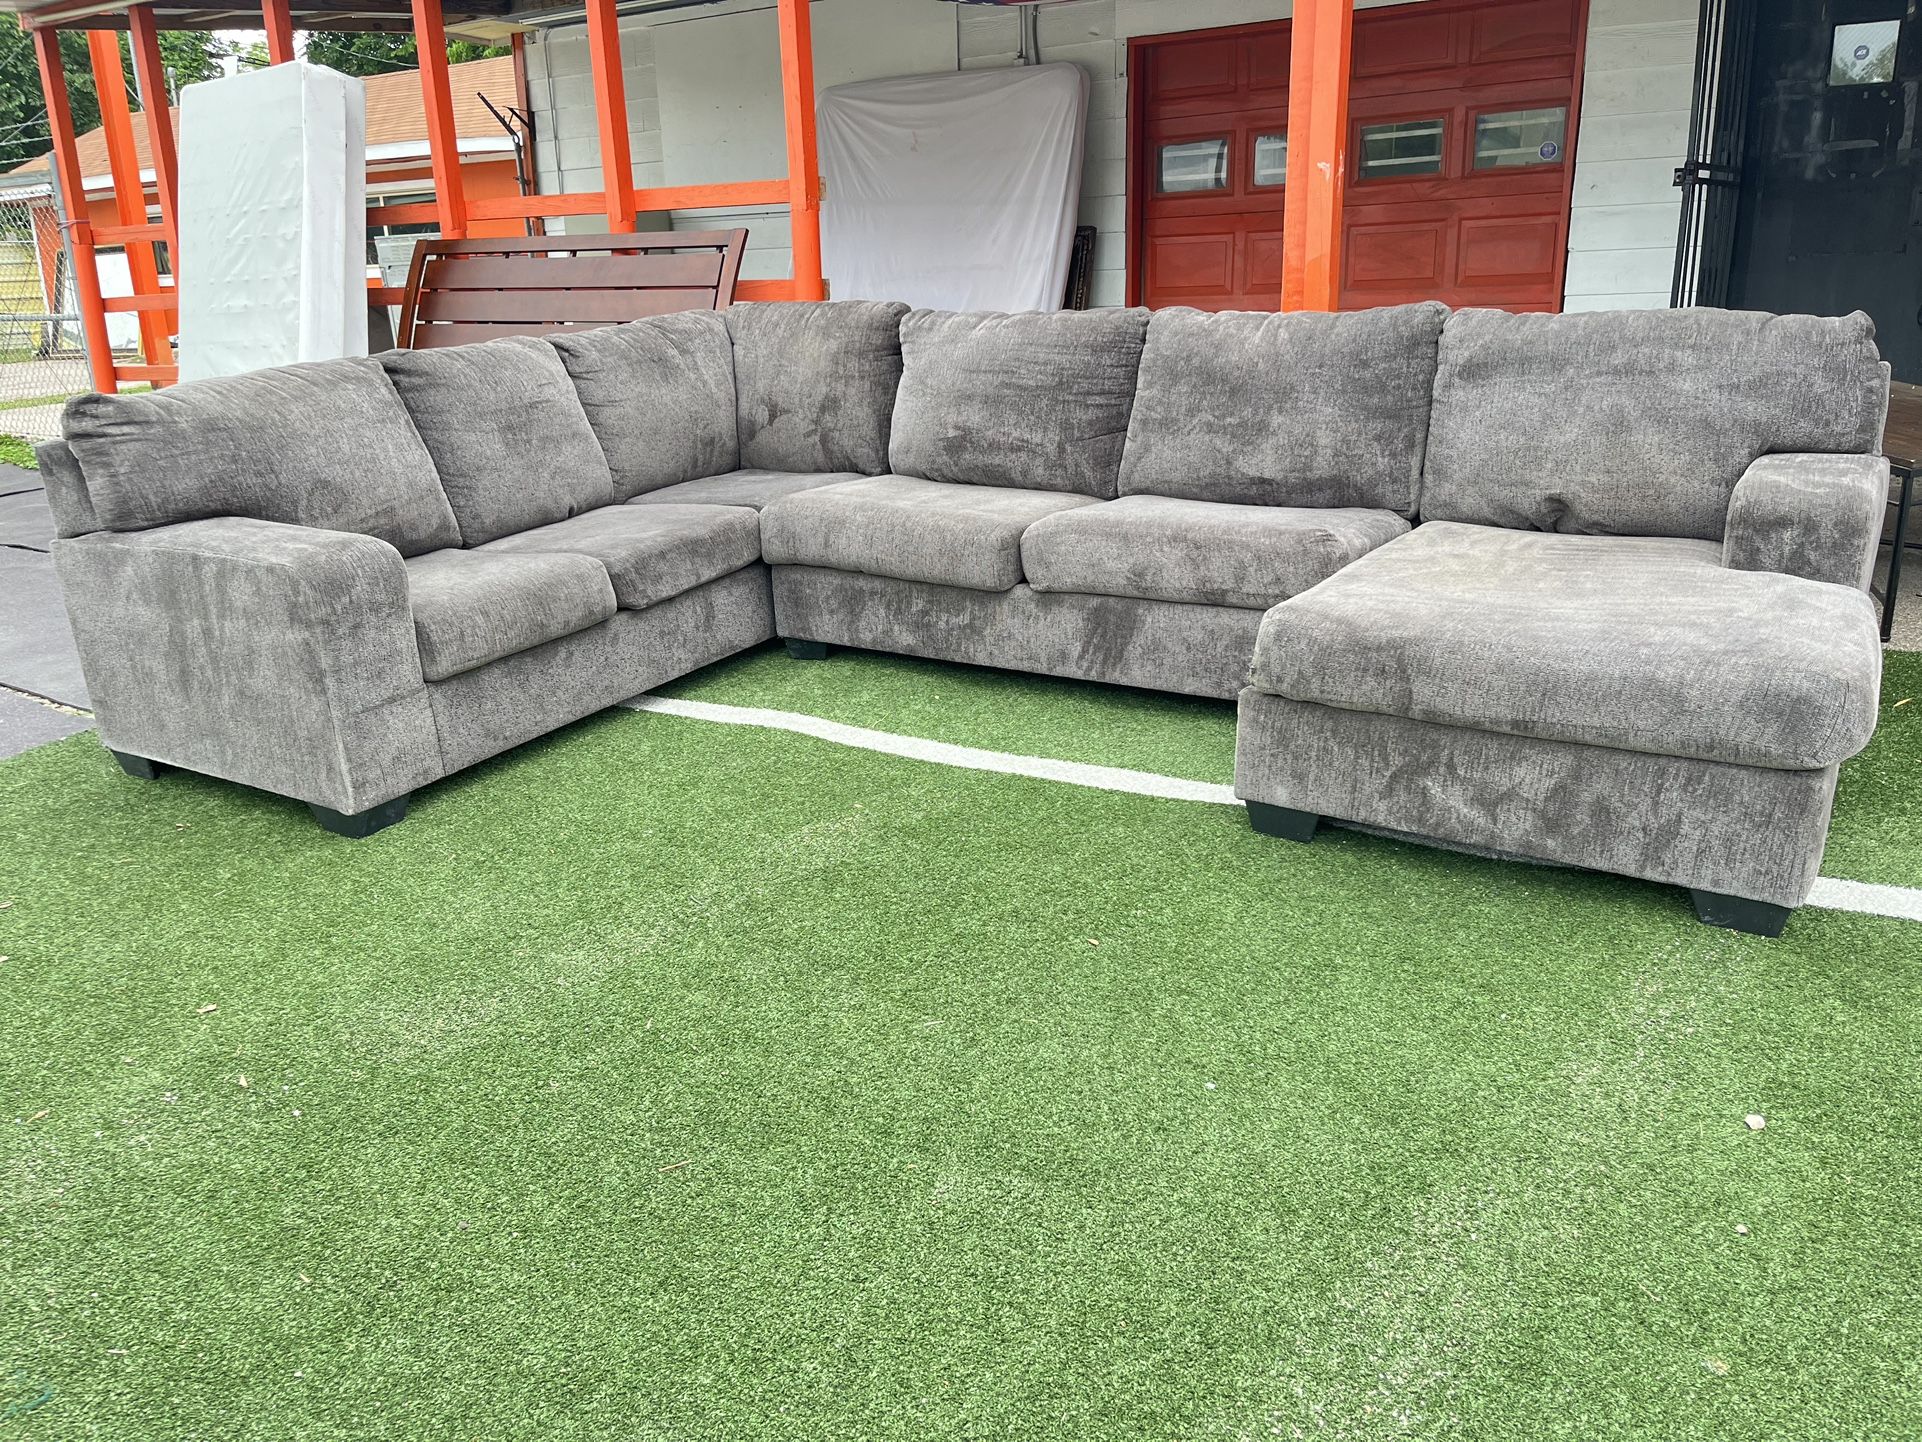 Big sectional sofa